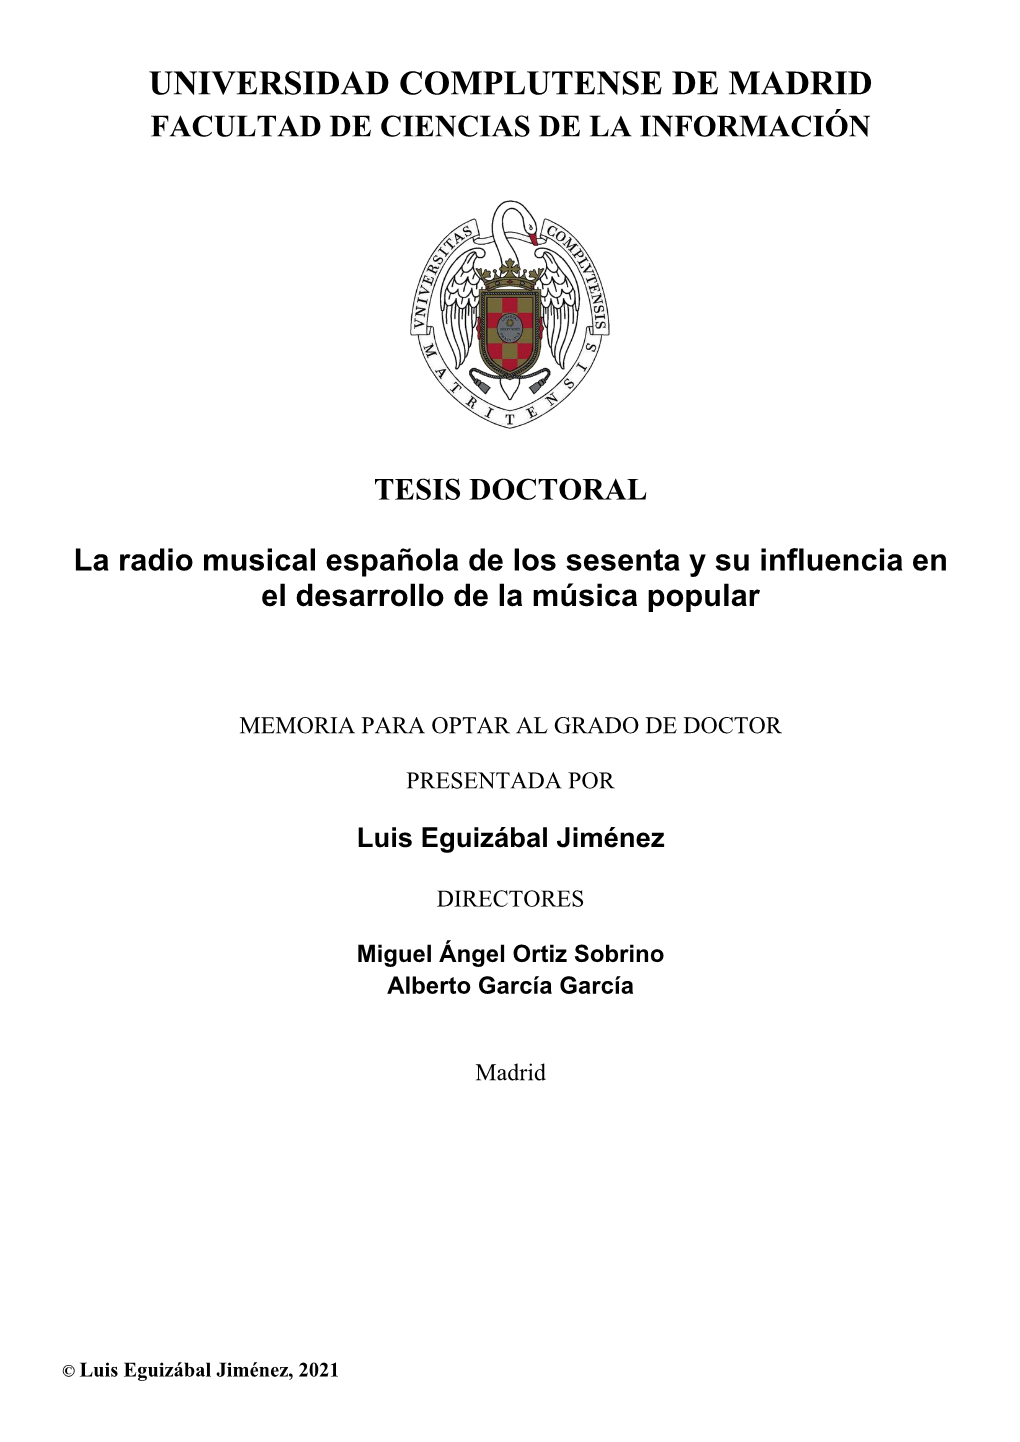 TESIS DOCTORAL La Radio Musical Española De Los Sesenta Y Su